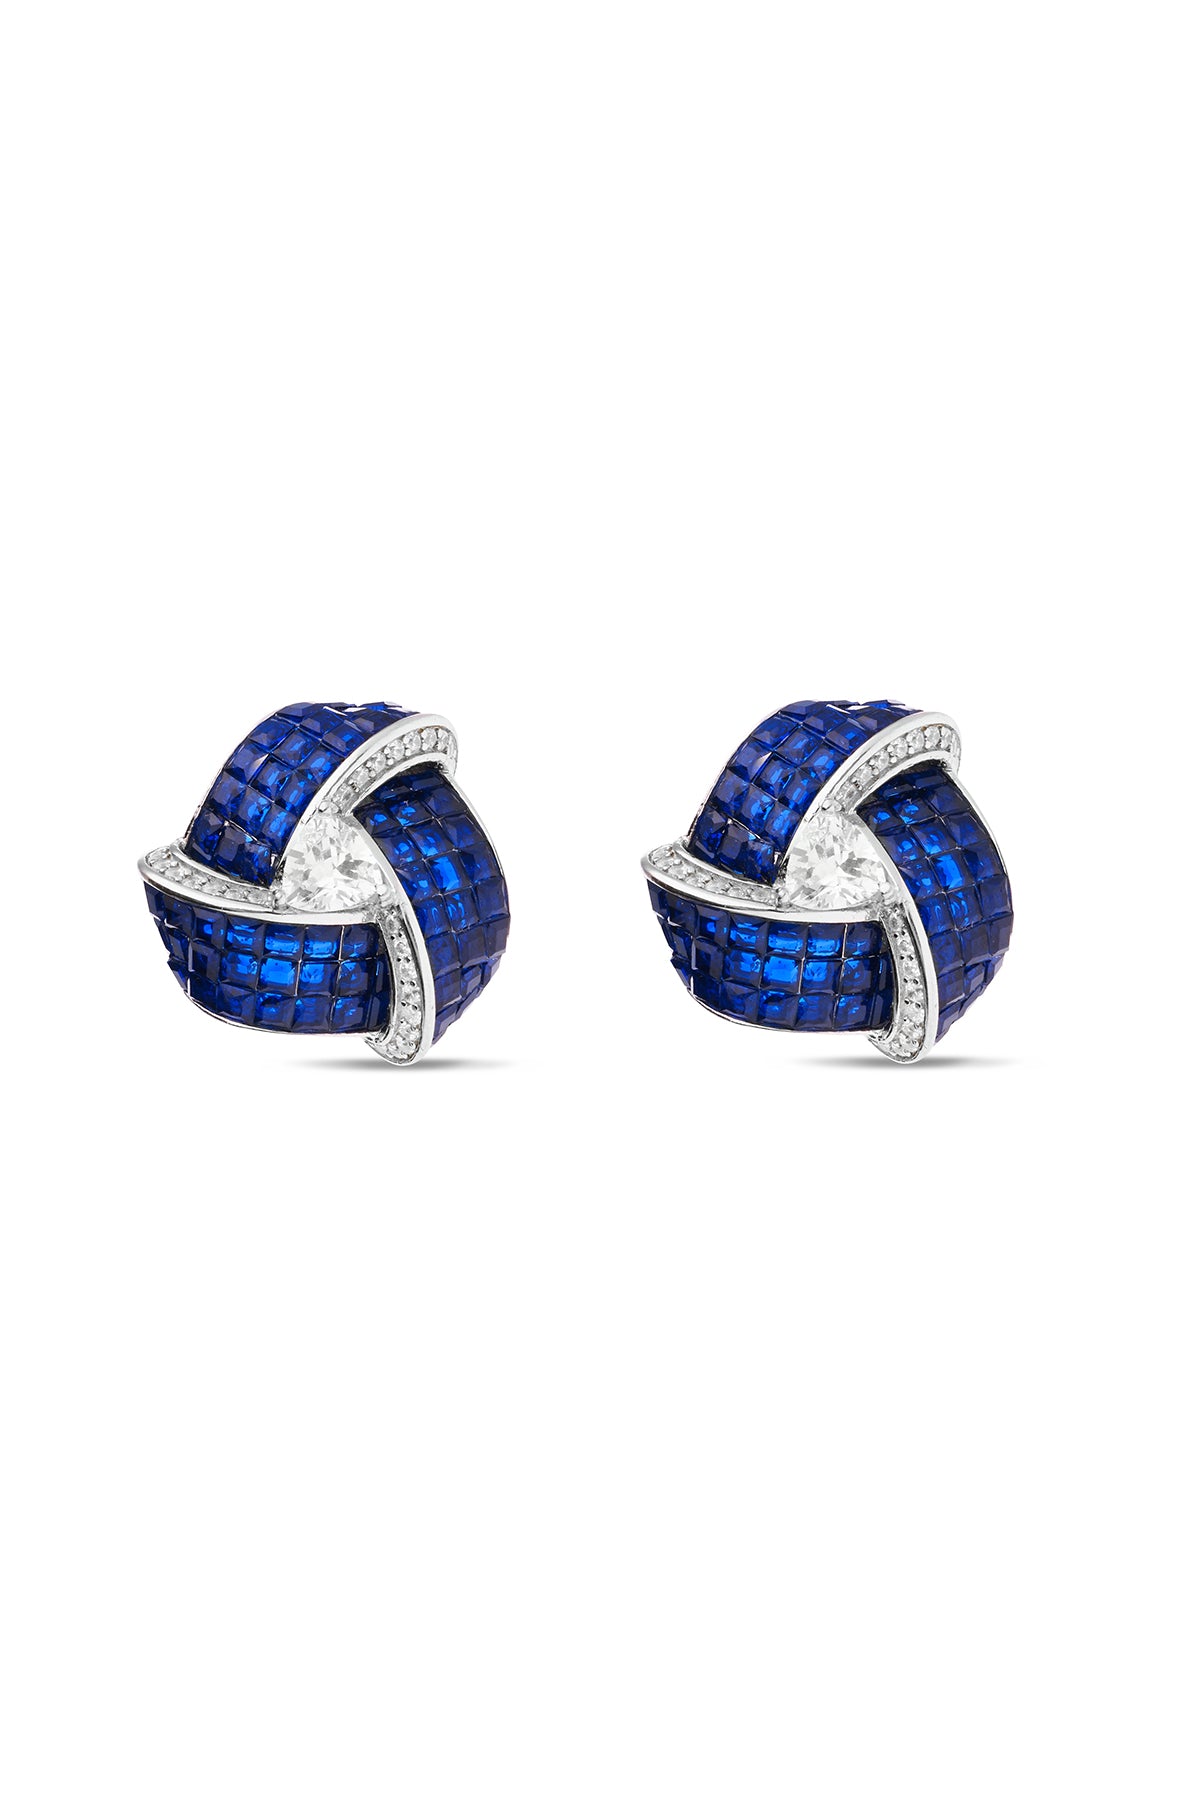 Enchanted Blue Sapphire Triad Blossom Stud Earrings